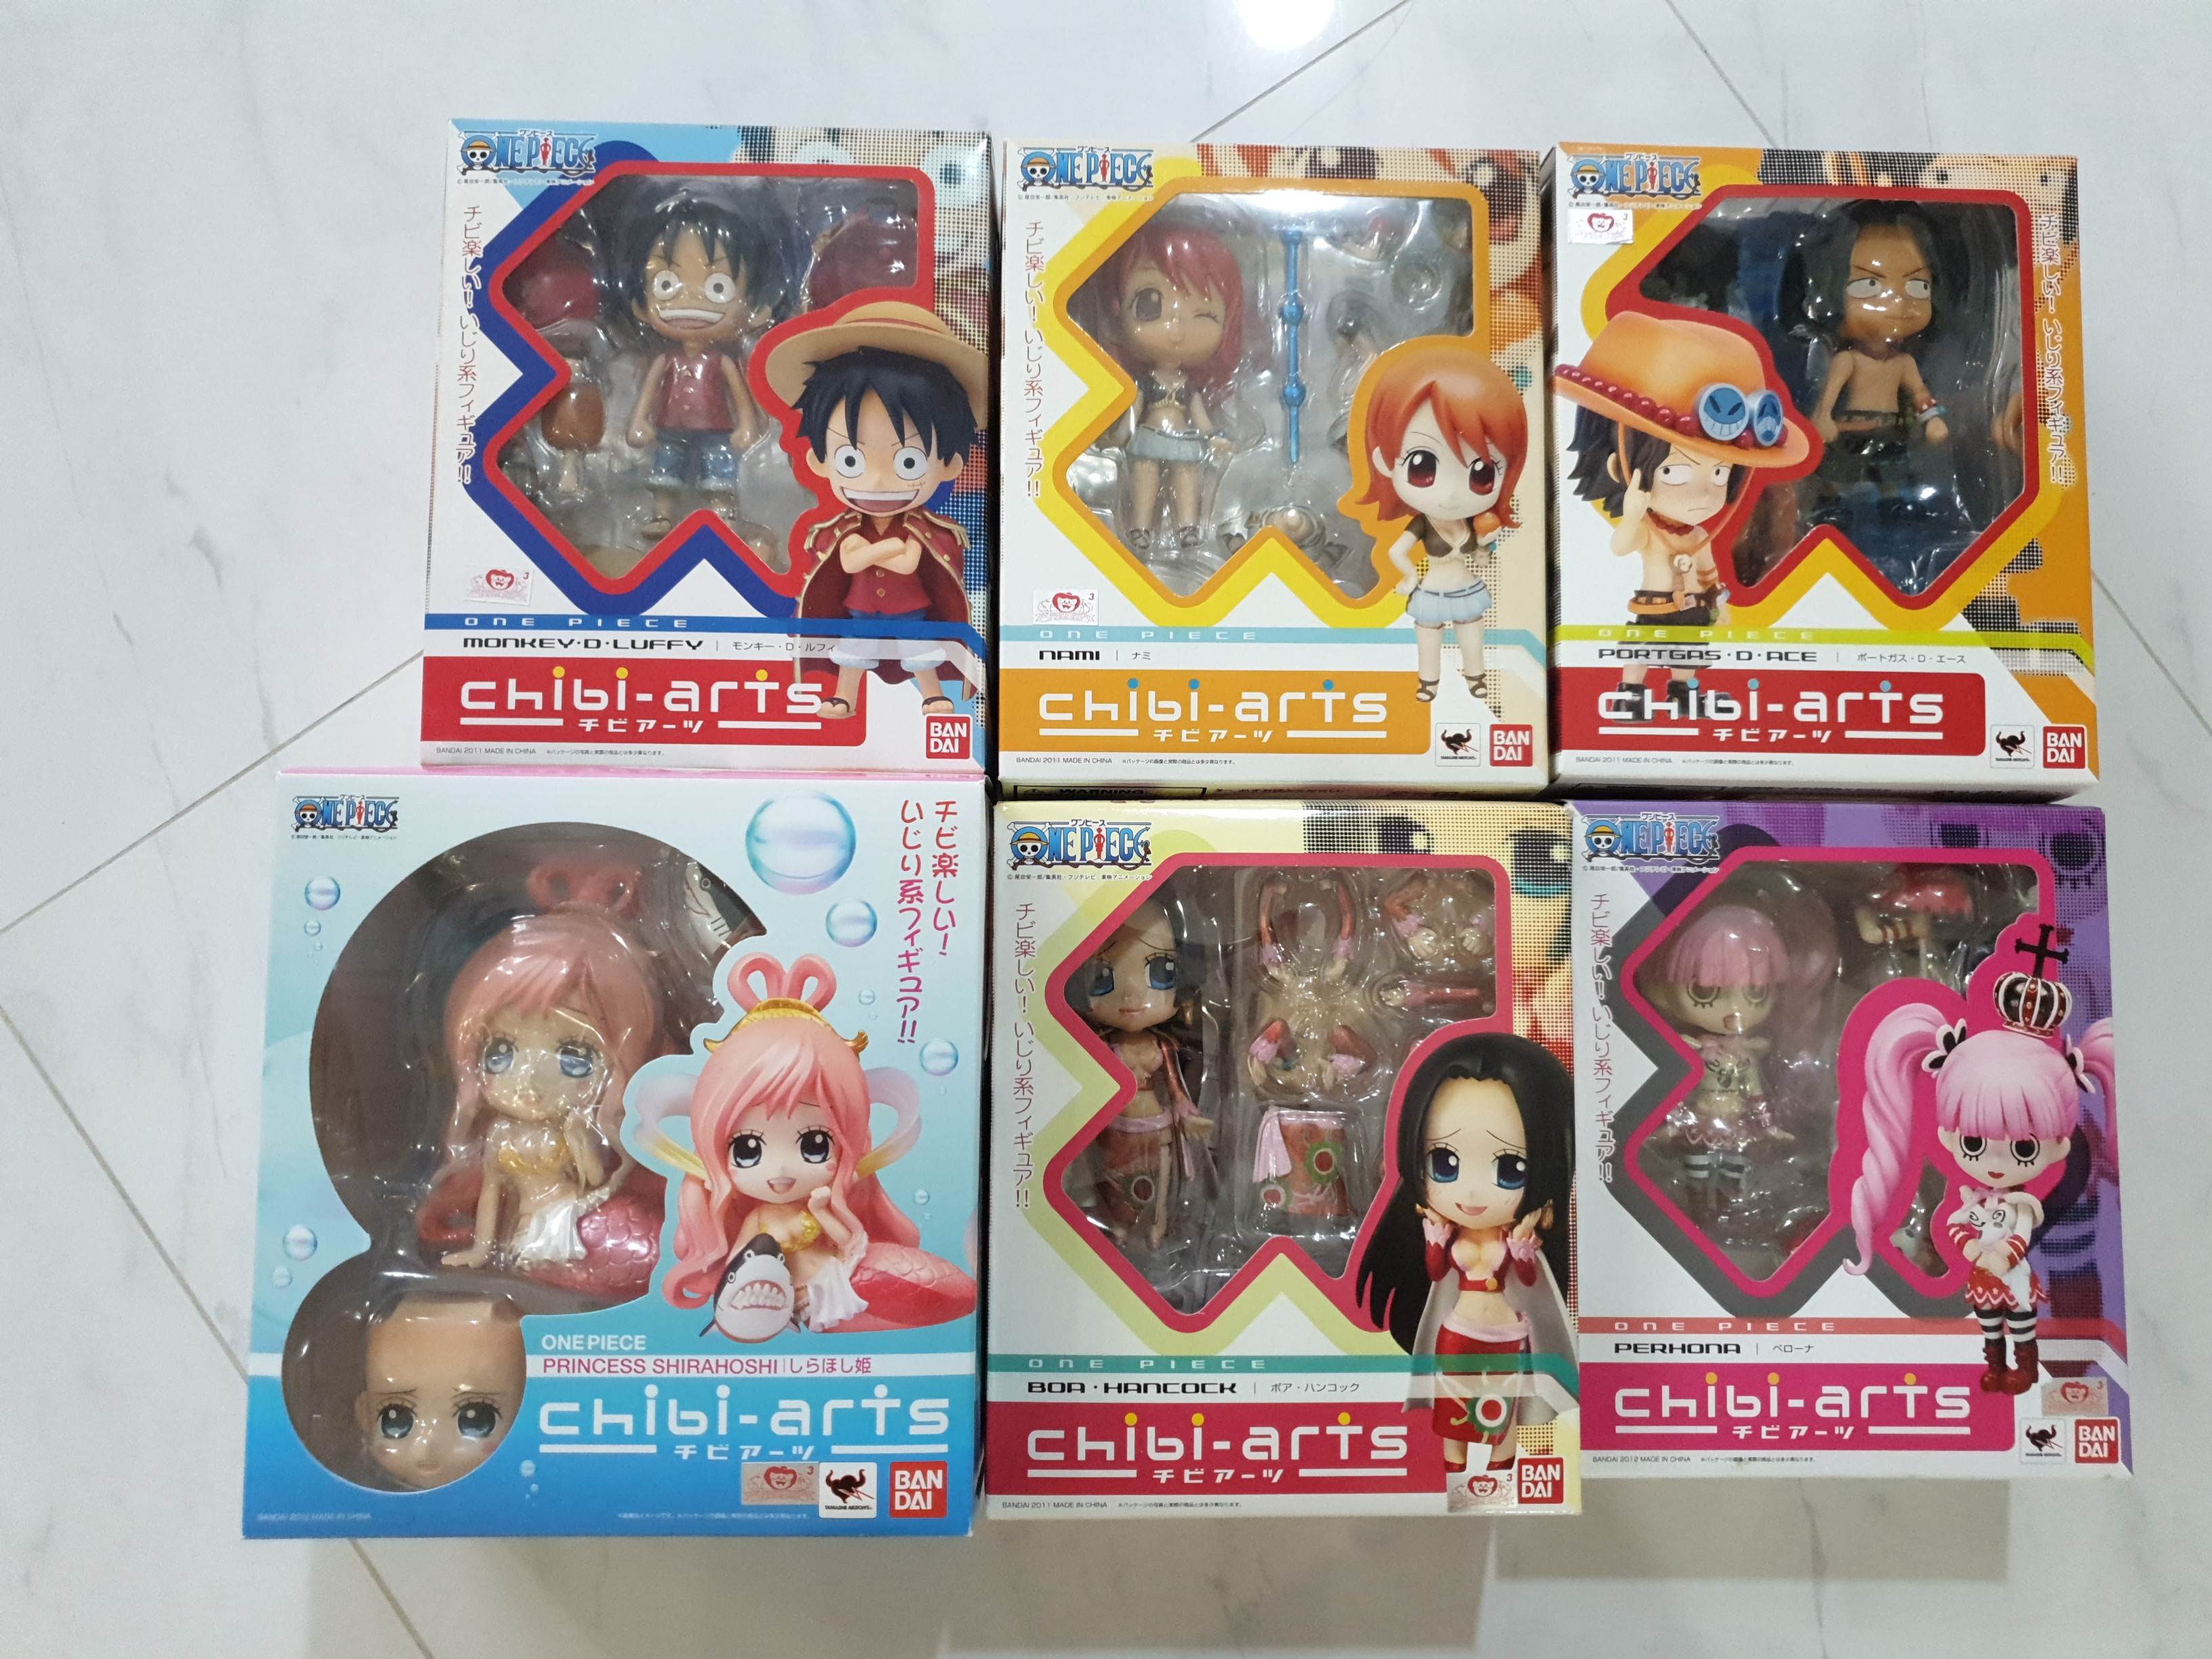 Chibi-Arts One Piece Collection 2024 sẽ là sự kiện hấp dẫn nhất dành cho các fan của bộ truyện tranh One Piece. Đây là cơ hội để sở hữu những chiếc Mô hình chibi độc đáo và rất được yêu thích của các nhân vật trong truyện. Đặc biệt, bộ sưu tập năm nay sẽ có thêm Tony Chopper và Perona, hai nhân vật vô cùng đáng yêu và quyến rũ. Nếu bạn là fan của One Piece, đừng bỏ lỡ cơ hội sở hữu những chiếc Chibi-Arts One Piece tuyệt vời này.